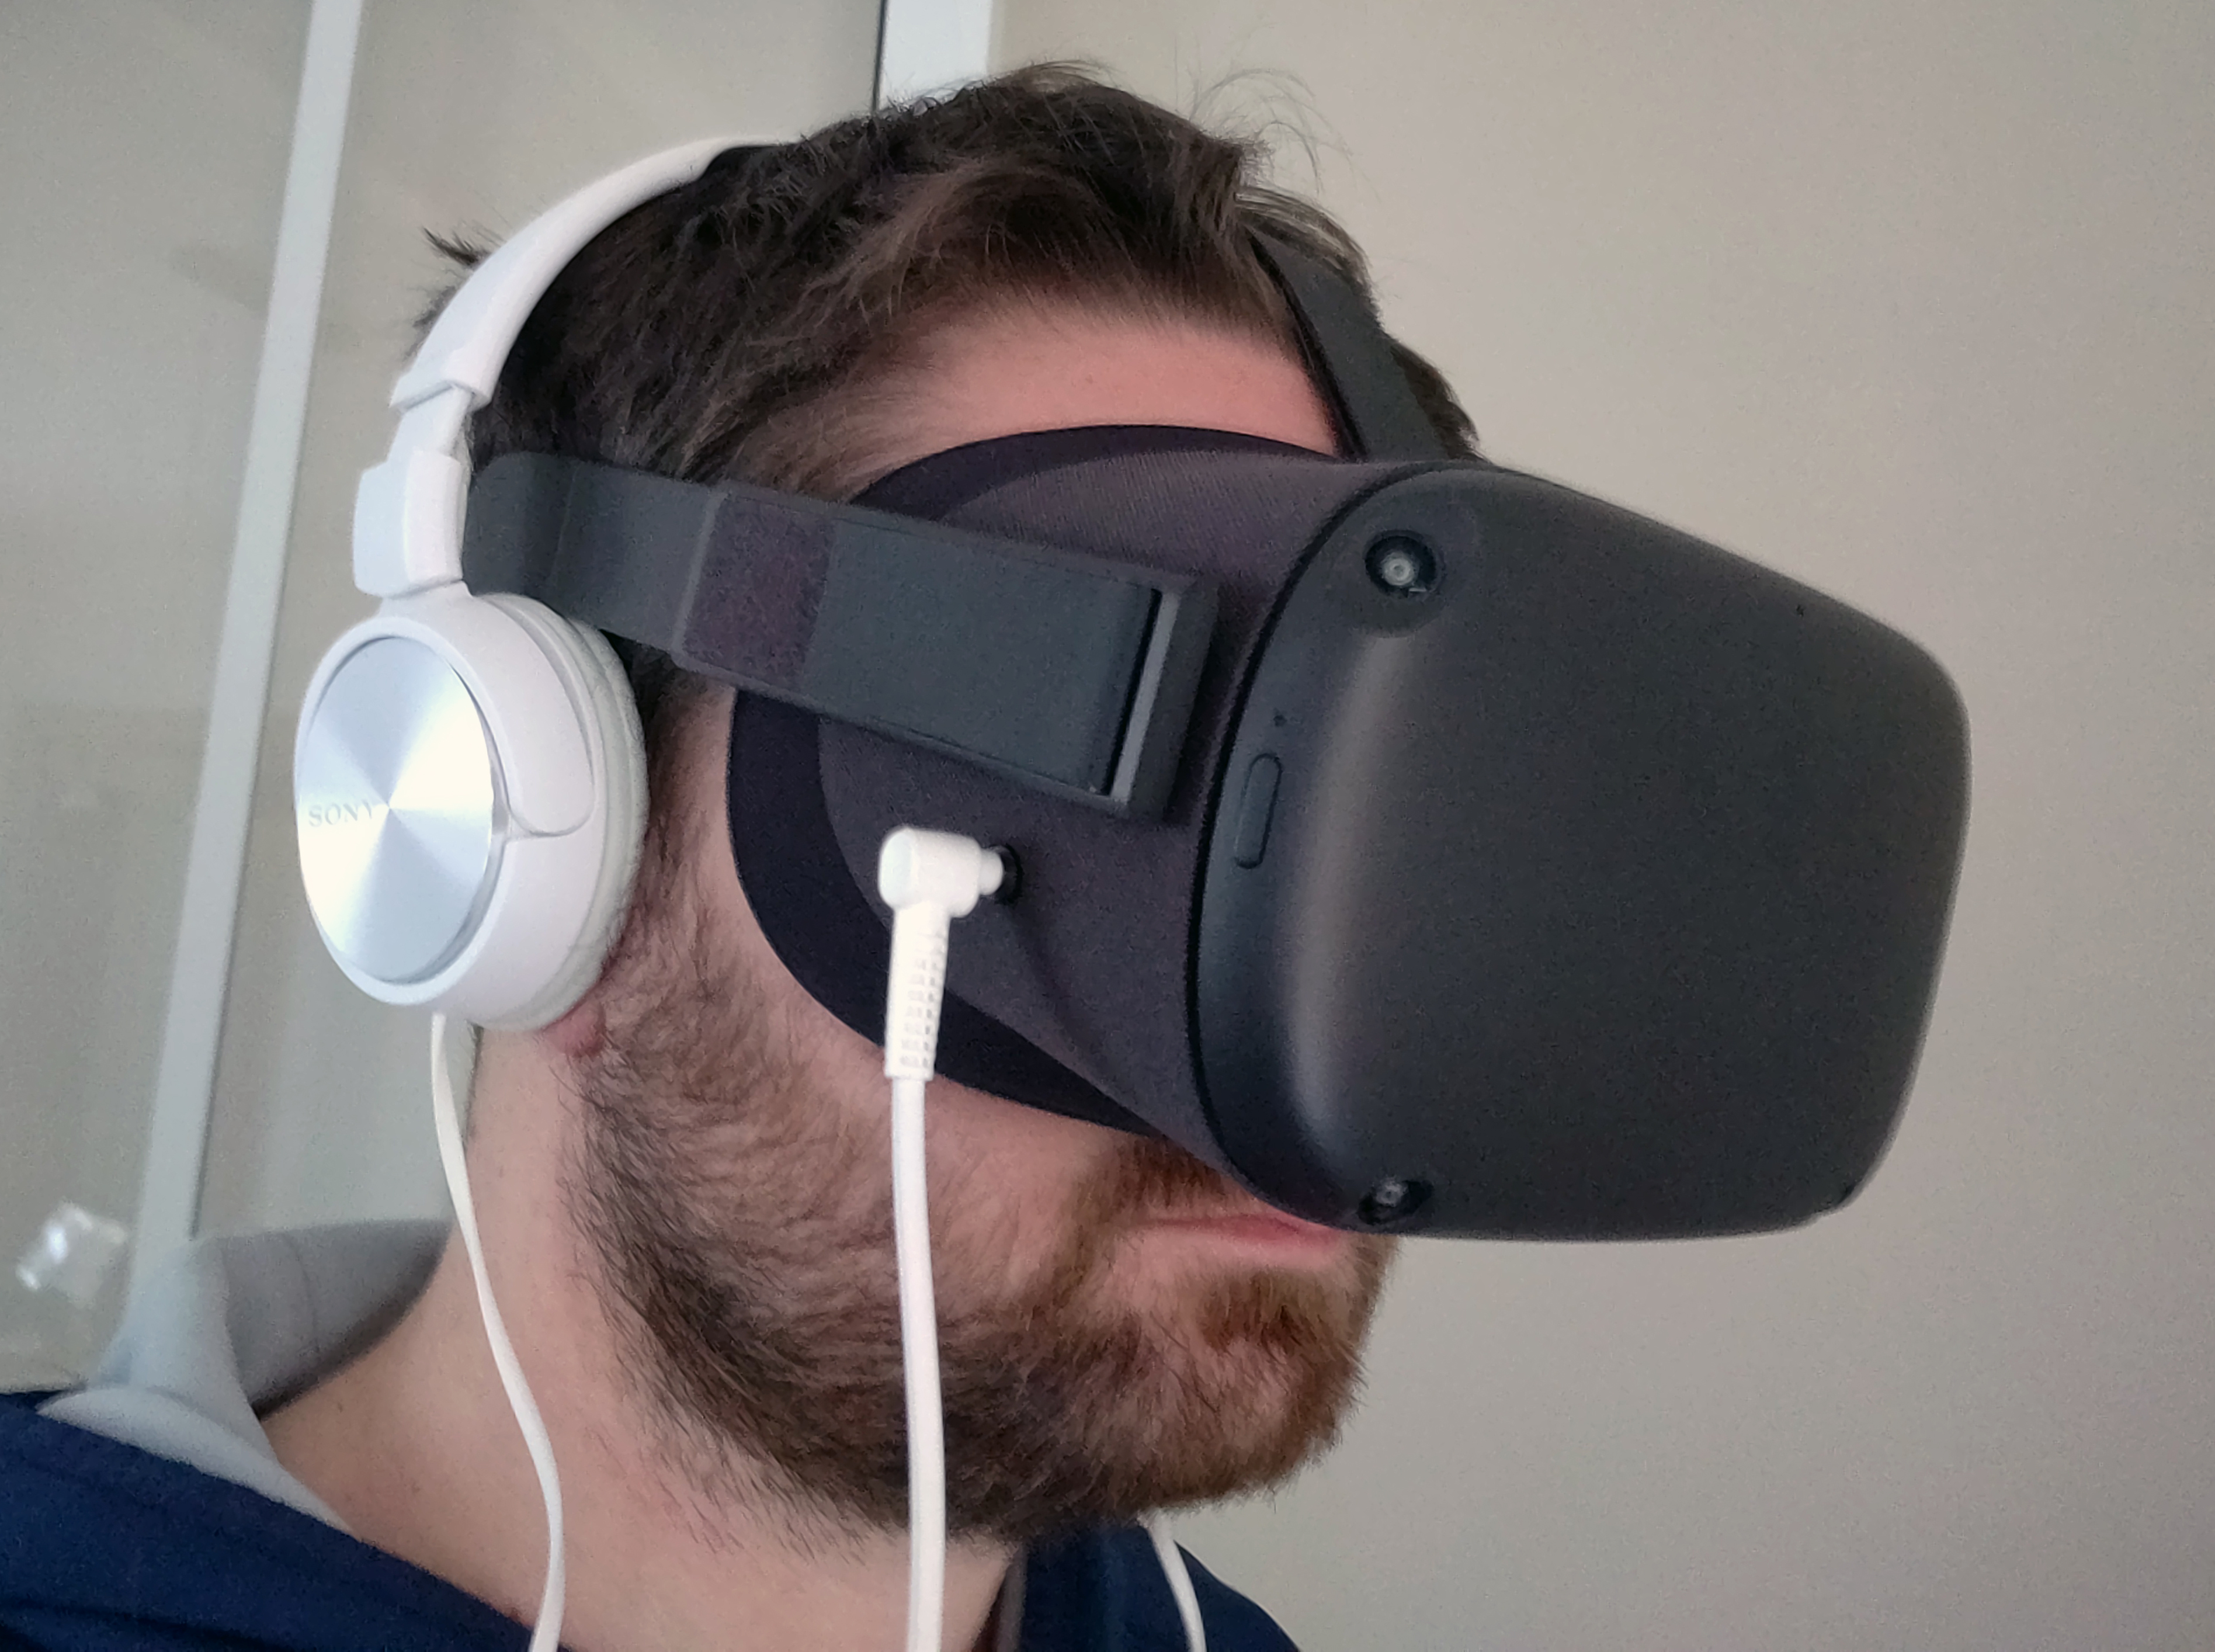 Le casque VR Oculus Quest 2 fuite juste avant sa présentation